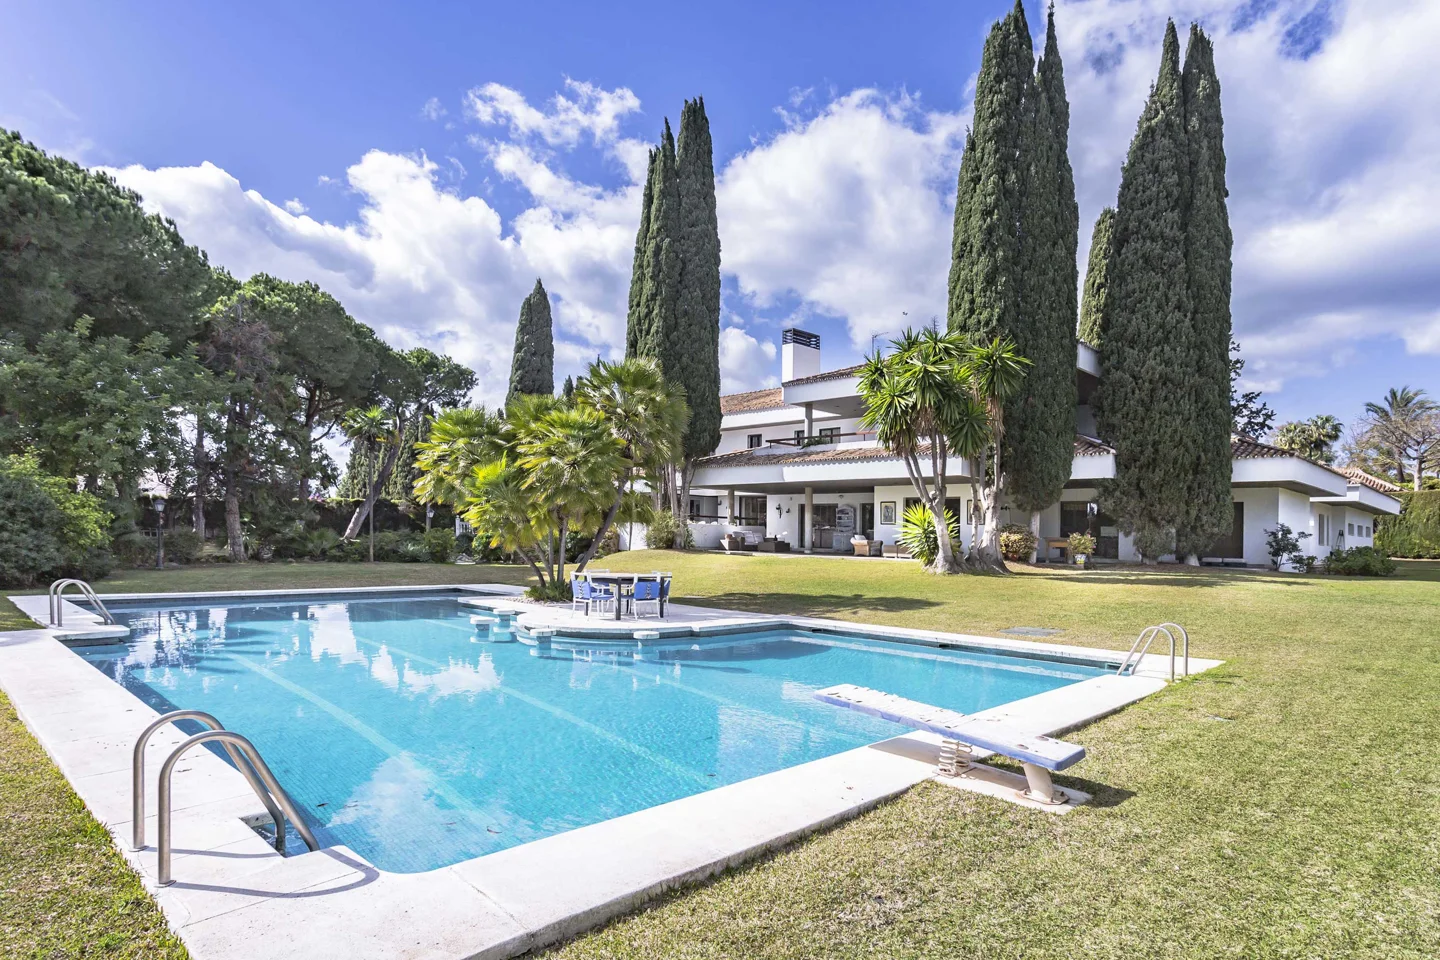 Elegante villa de estilo contemporáneo en Guadalmina Beachside, a poca distancia de la playa y con una gran parcela.